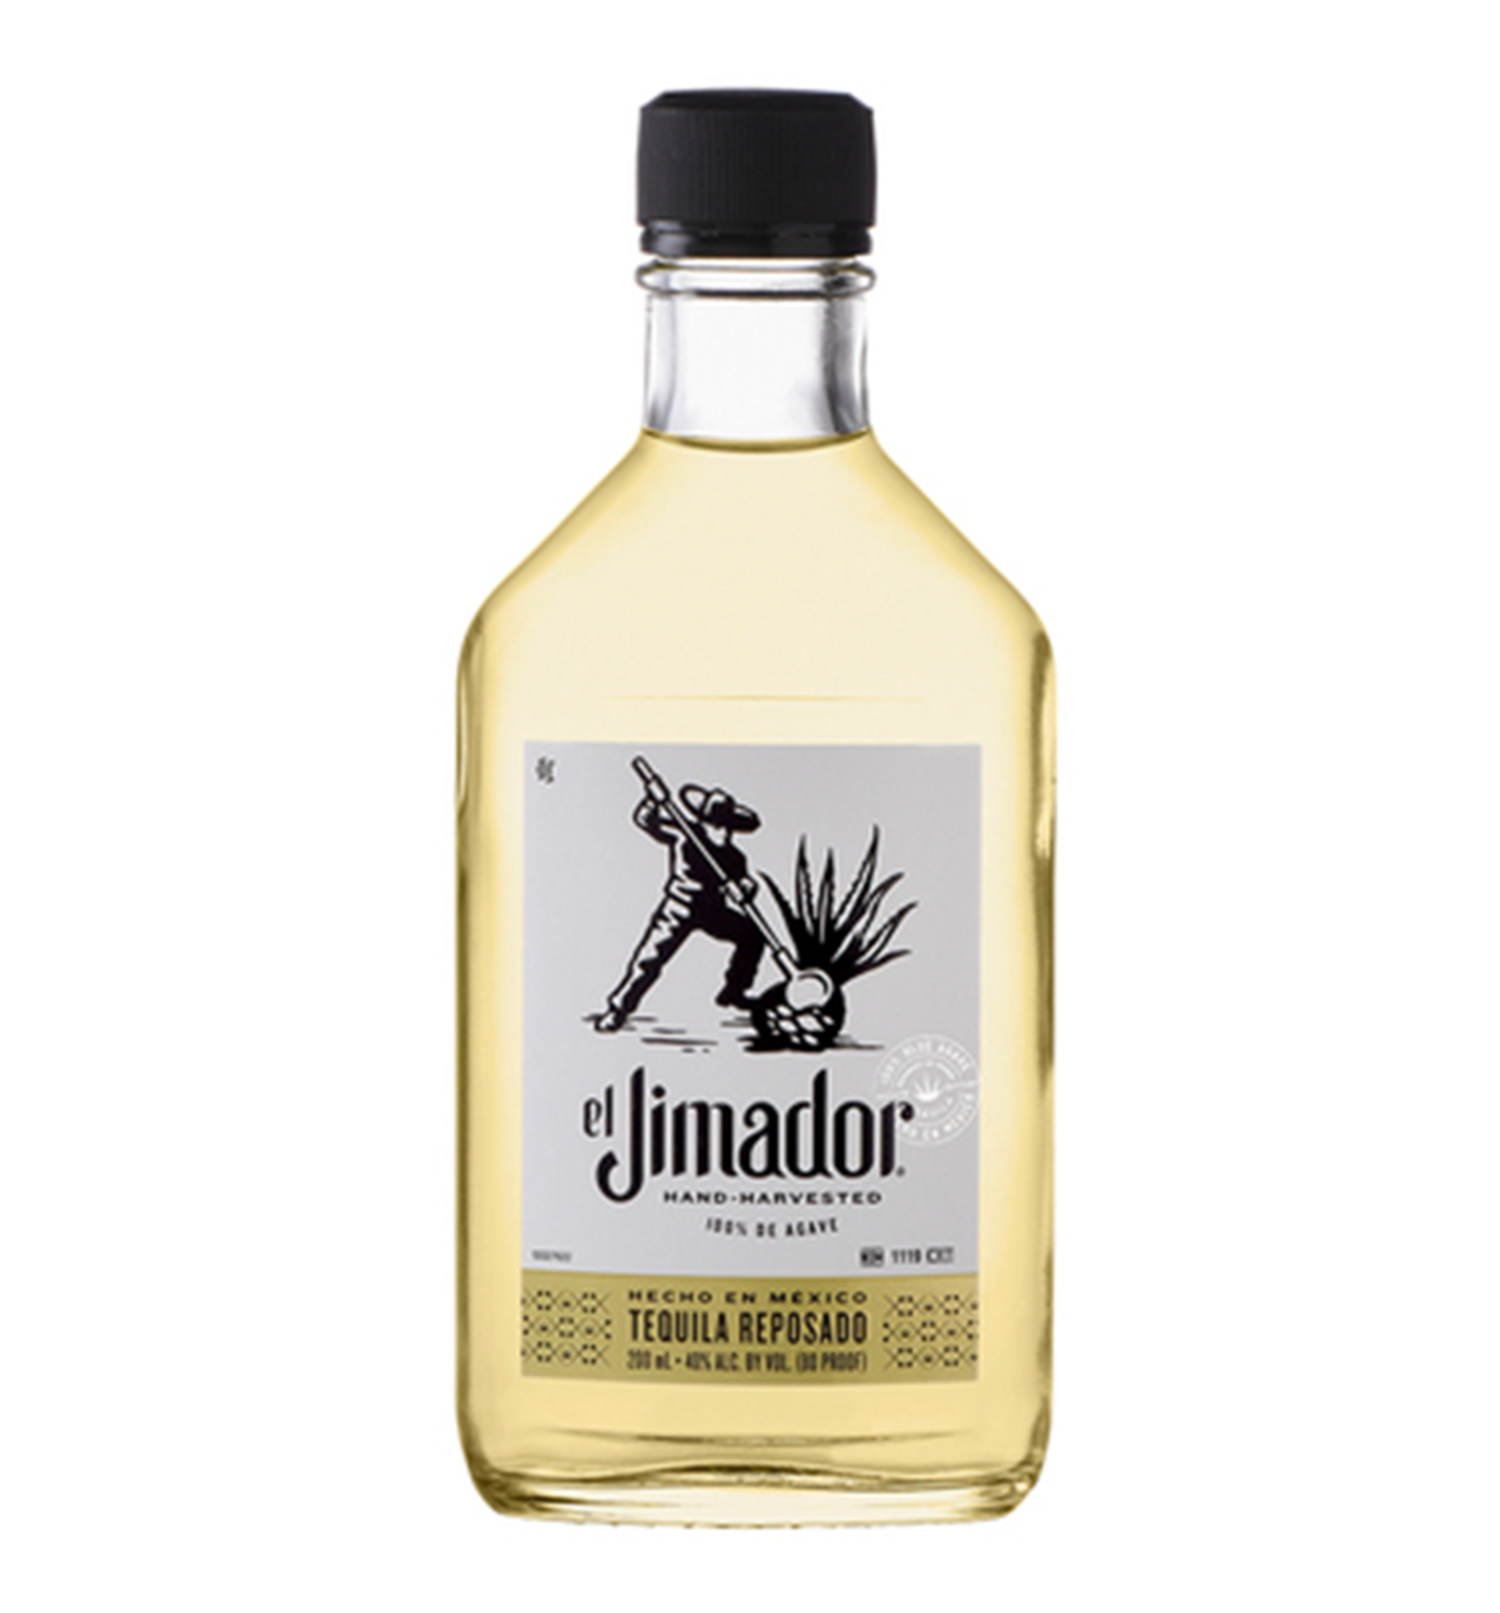 El Jimador Reposado Tequila 200ml $8 FREE DELIVERY - Uncle Fossil